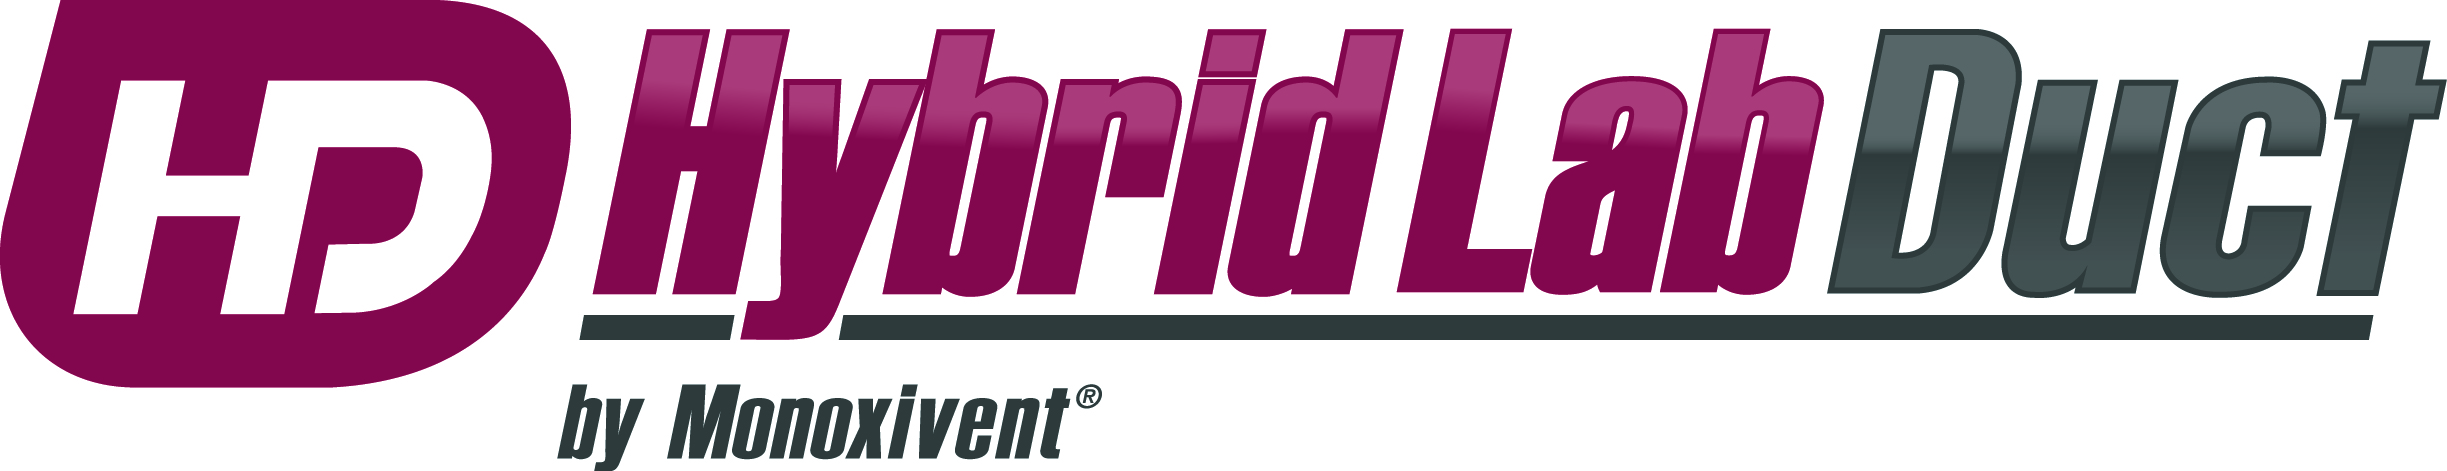 Hybridlabduct logo gradient cmyk